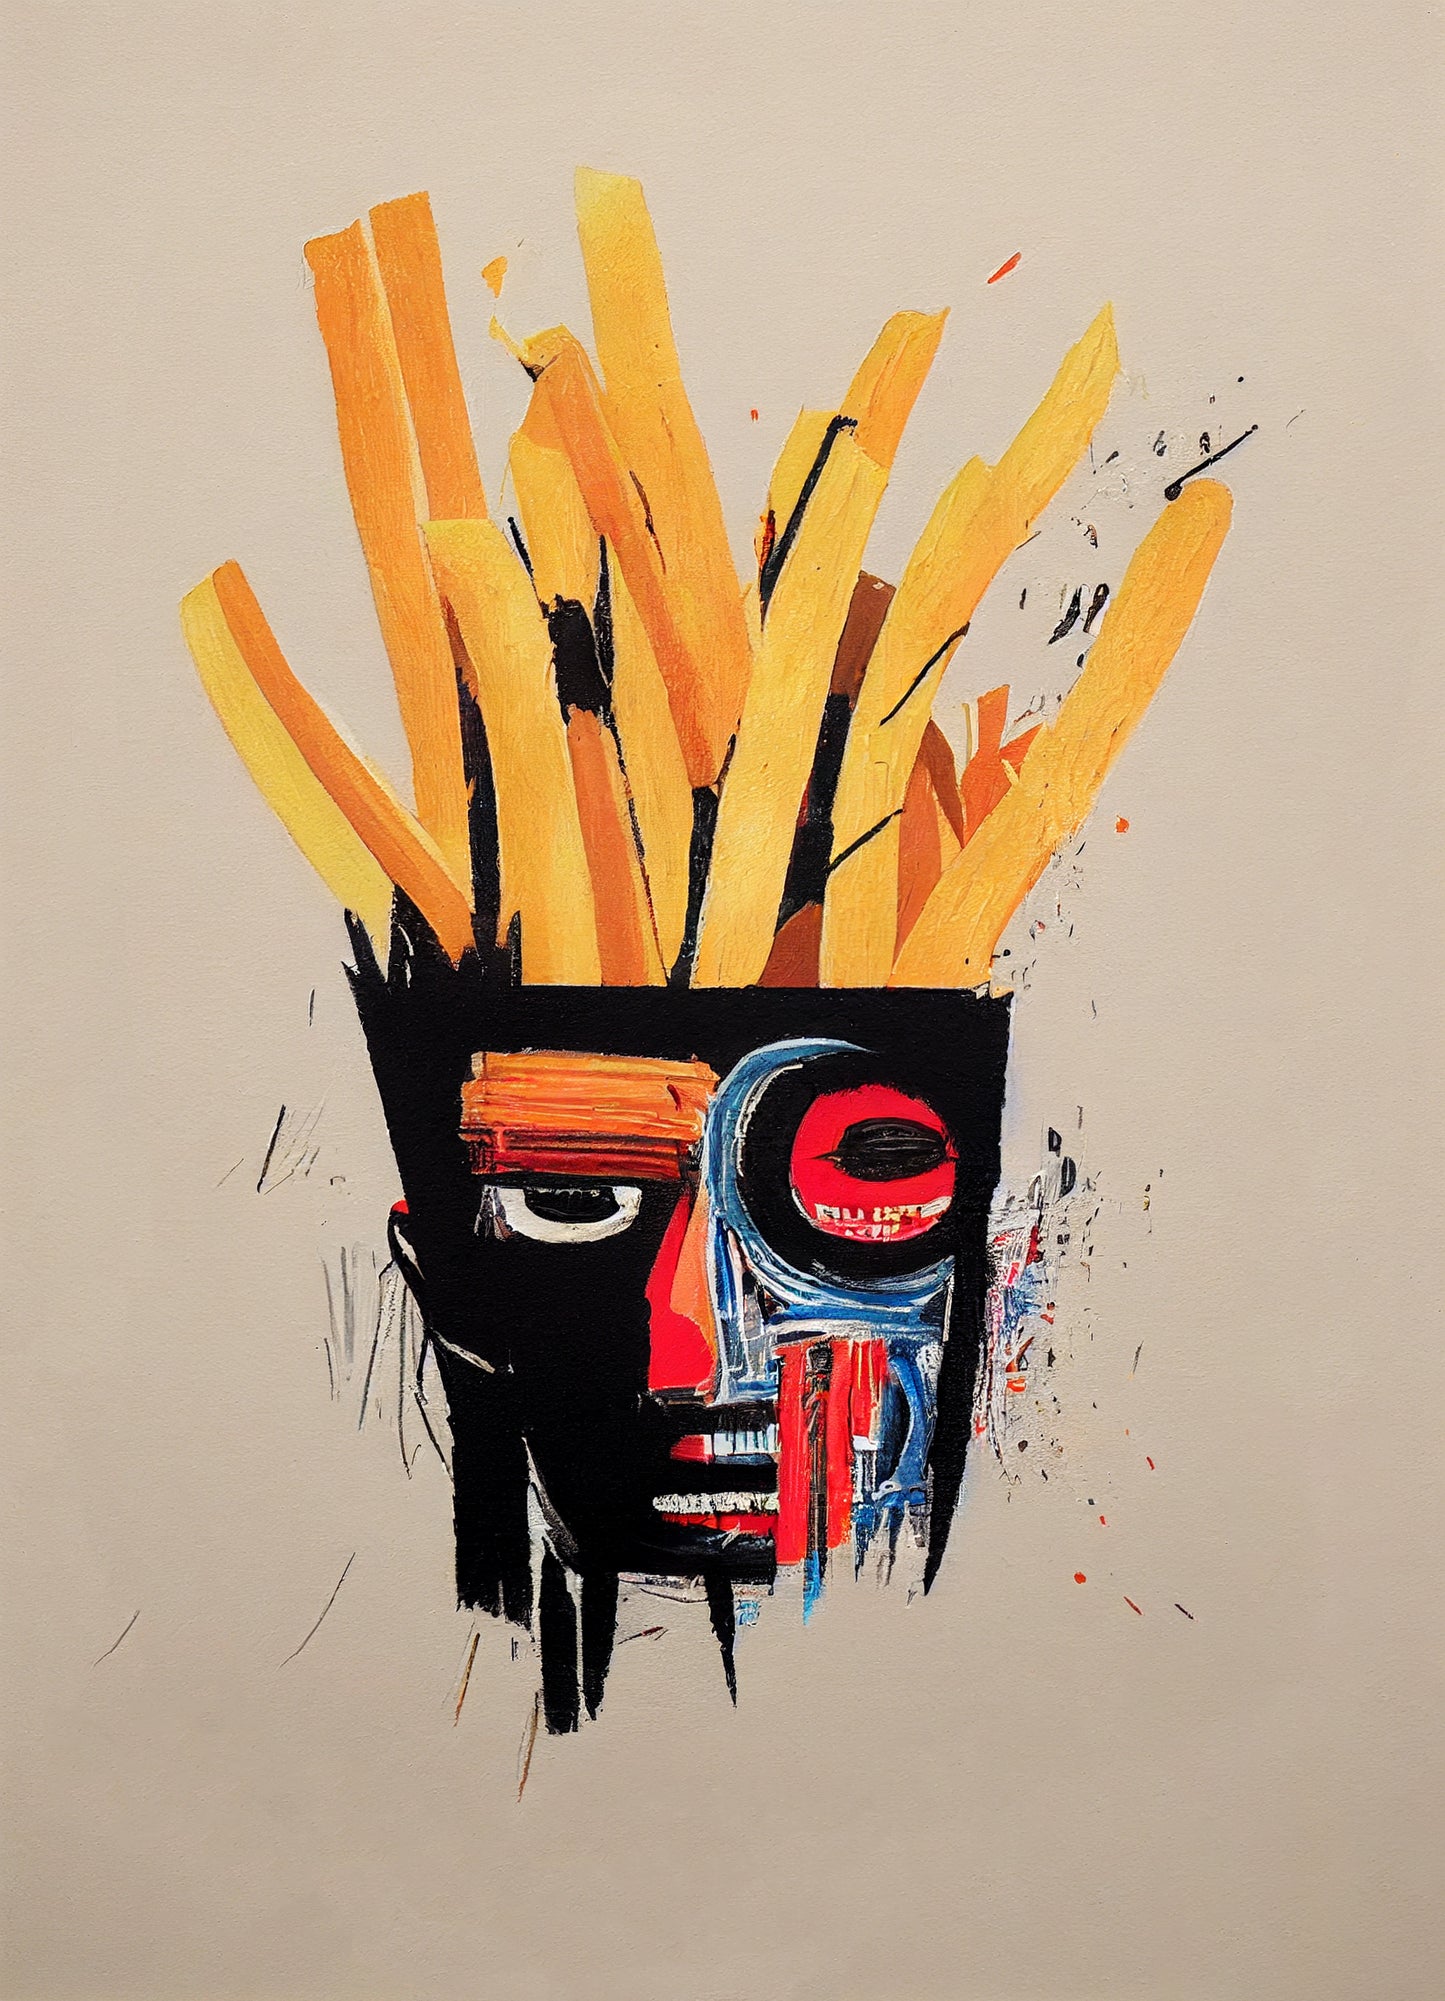 Inspiré de Basquiat, tableau de décoration qui représente le visage d'un afro-américain avec des cheveux en frite. Minimalistes et colorées, ses couleurs sont vives et profondes. Les couleurs principales sont le jaune, le rouge, le noir et le beige.